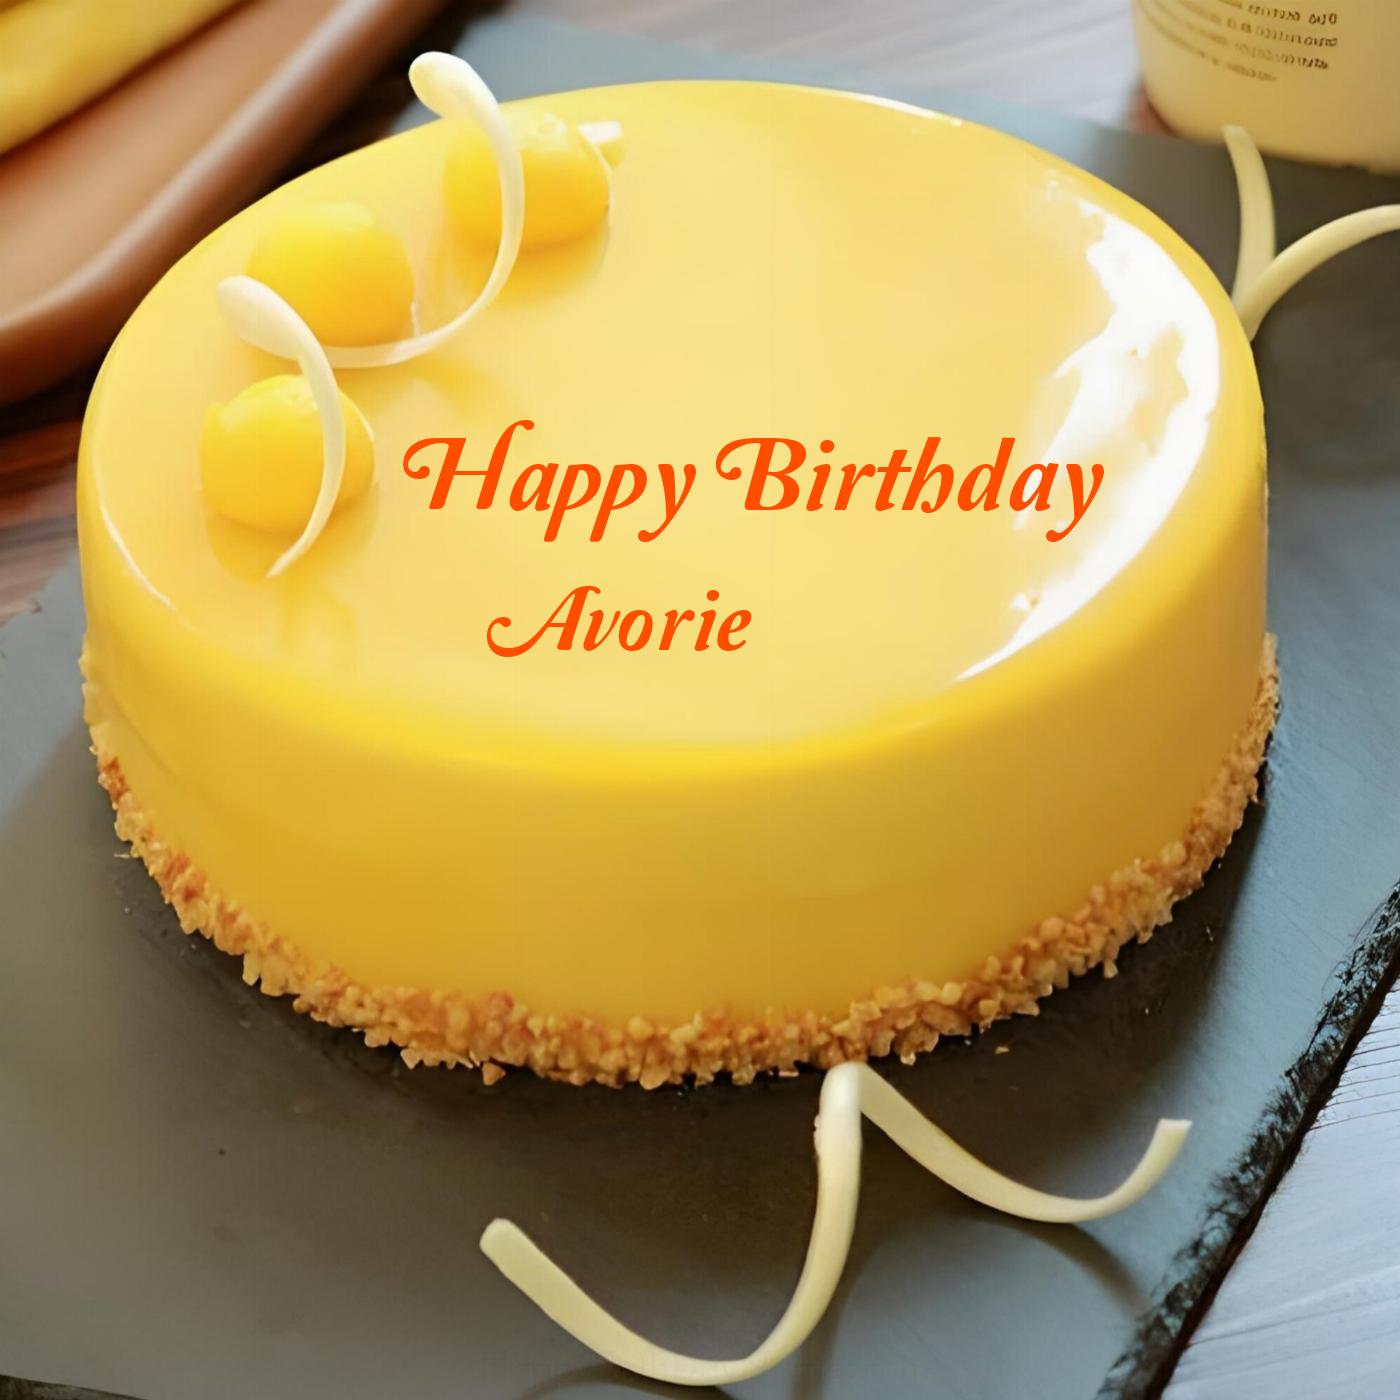 Happy Birthday Avorie Beautiful Yellow Cake